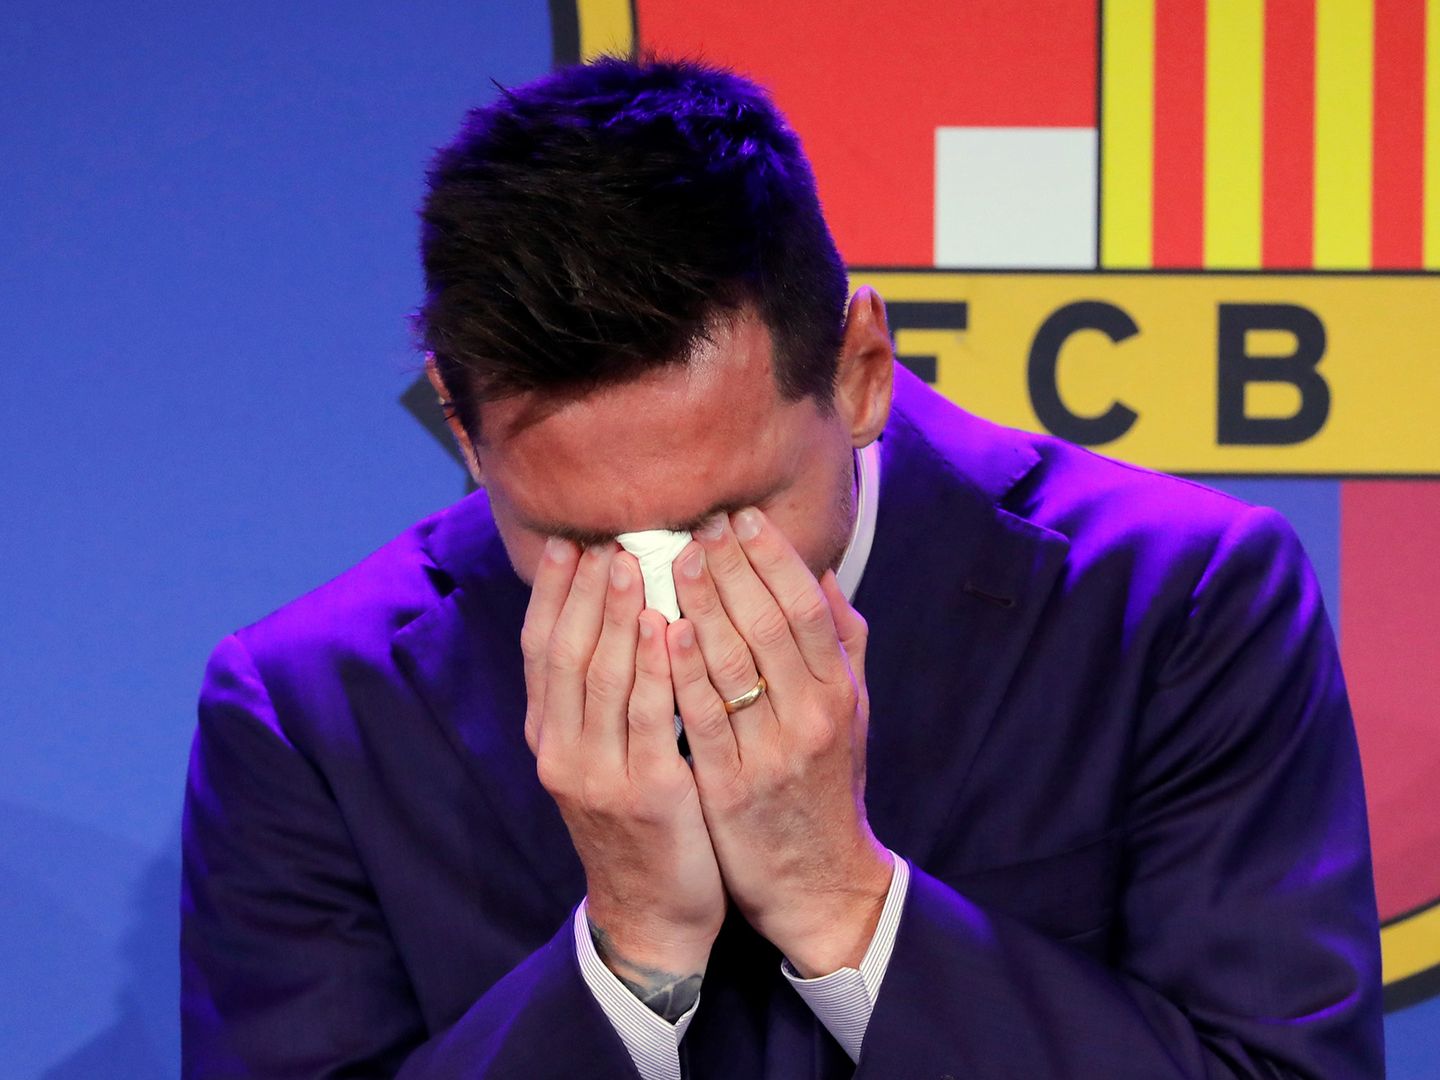 Łzy i łamiący się głos. Smutne obrazki z Barcelony